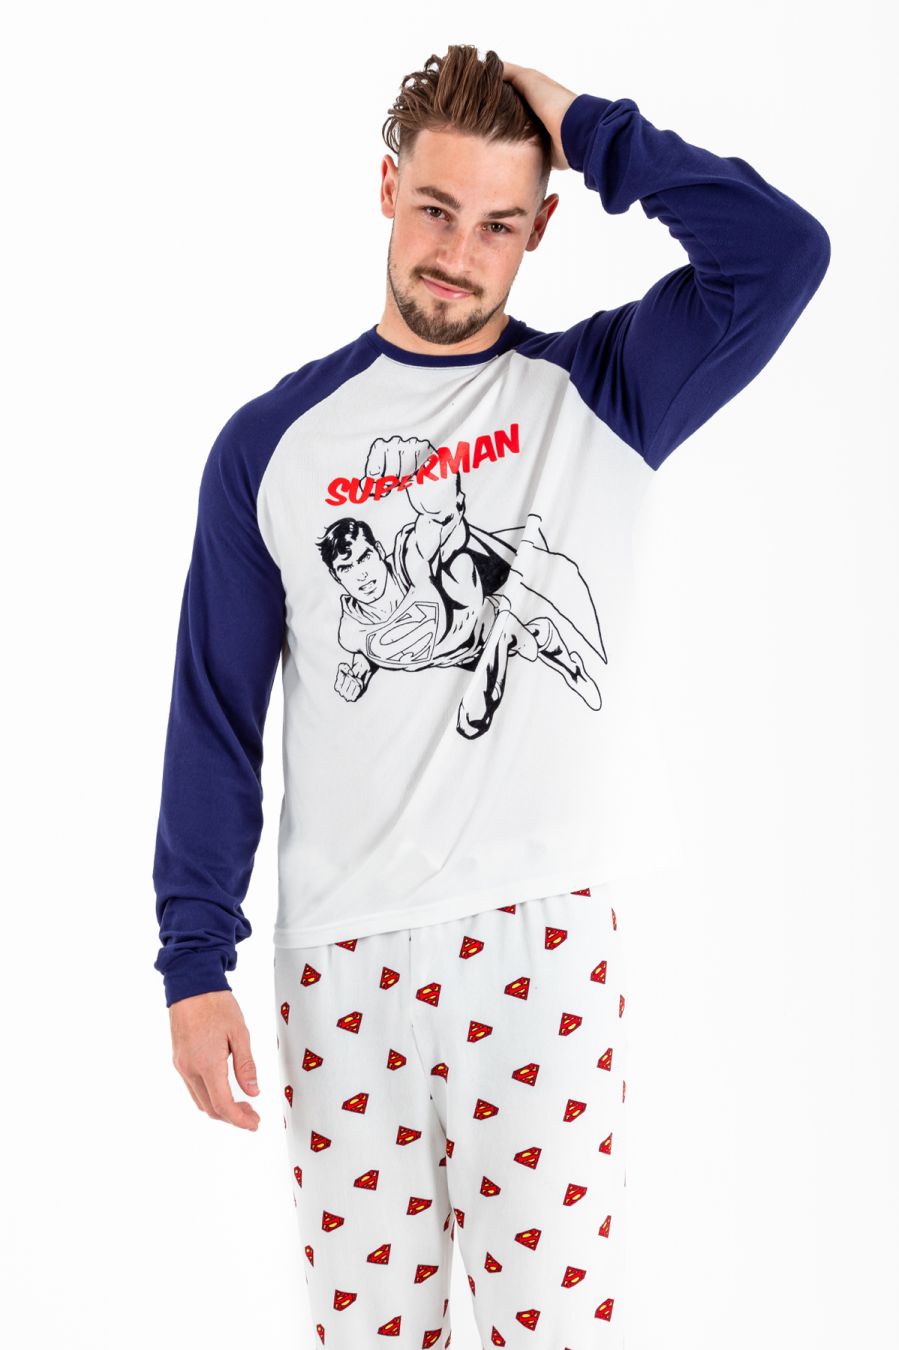 Site lijn Kwijtschelding Woud Men'sNightwear|Pyjamas|Annabelleme